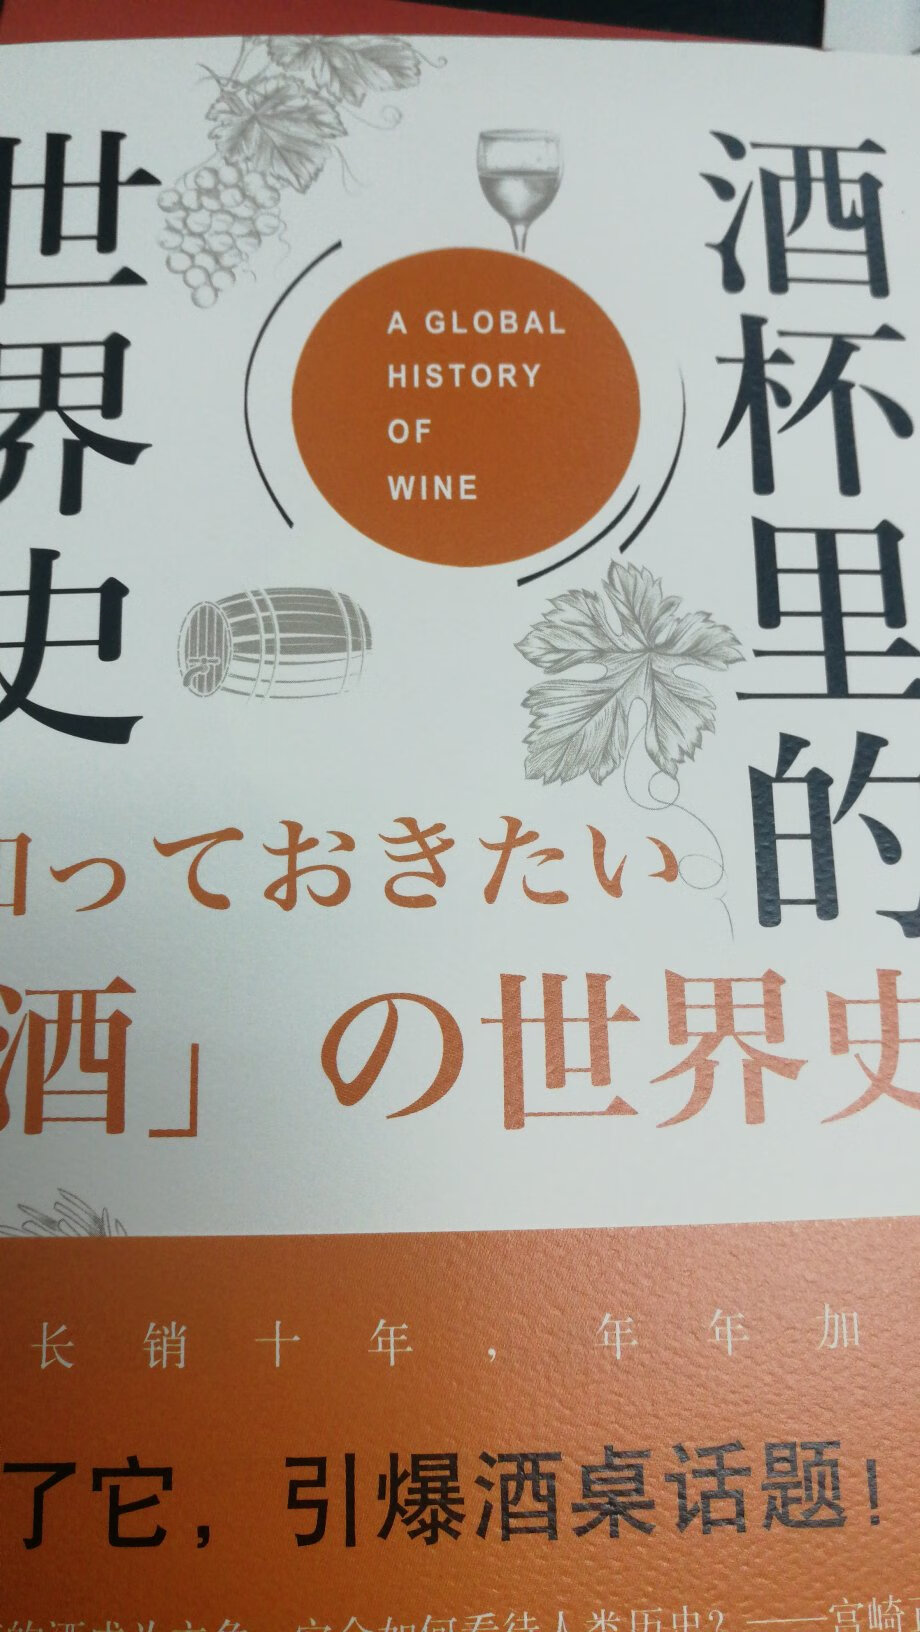 这本书以酒为切入点，揭示人类世界历史的发展进程。通过酒文化以及各种酒文化之间的交流，揭示世界各个文明之间的互动过程。